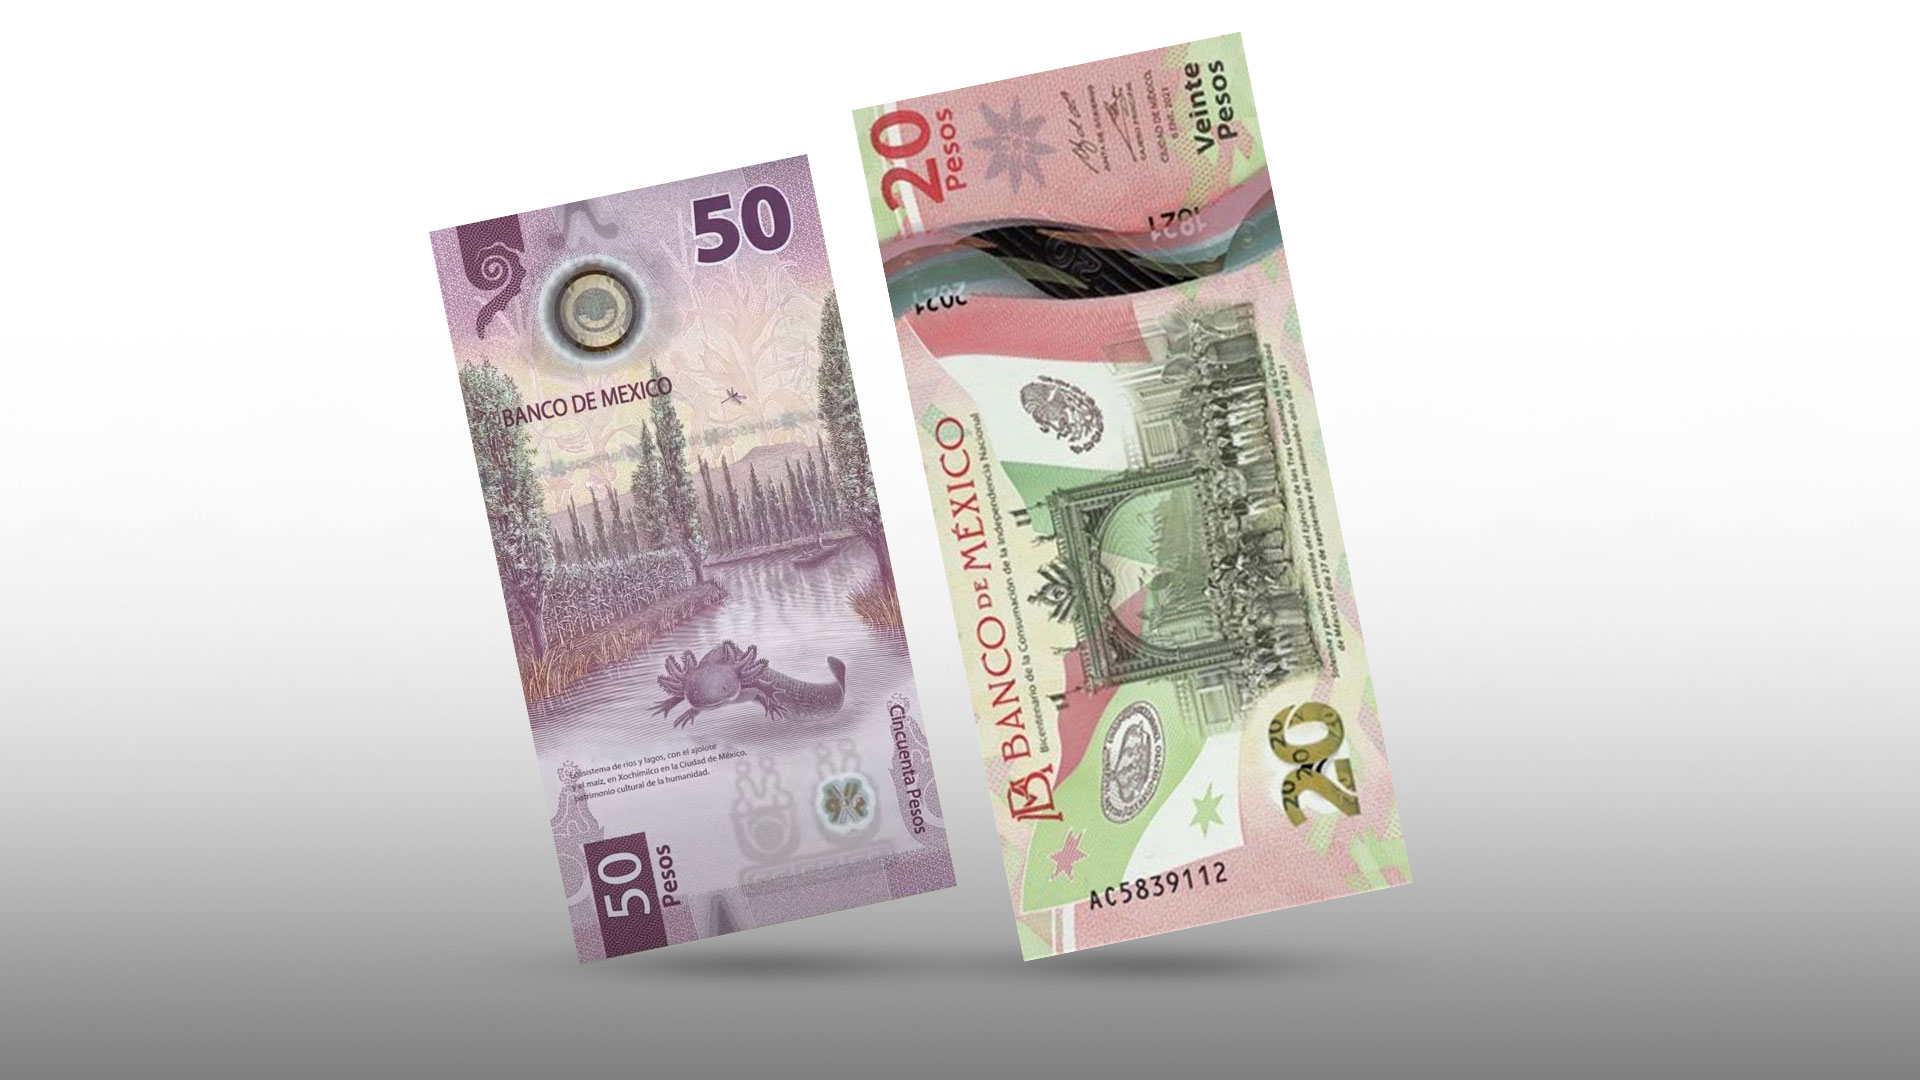 Dos billetes de la familia G a precios exorbitantes: uno de ellos supera los 200 mil pesos